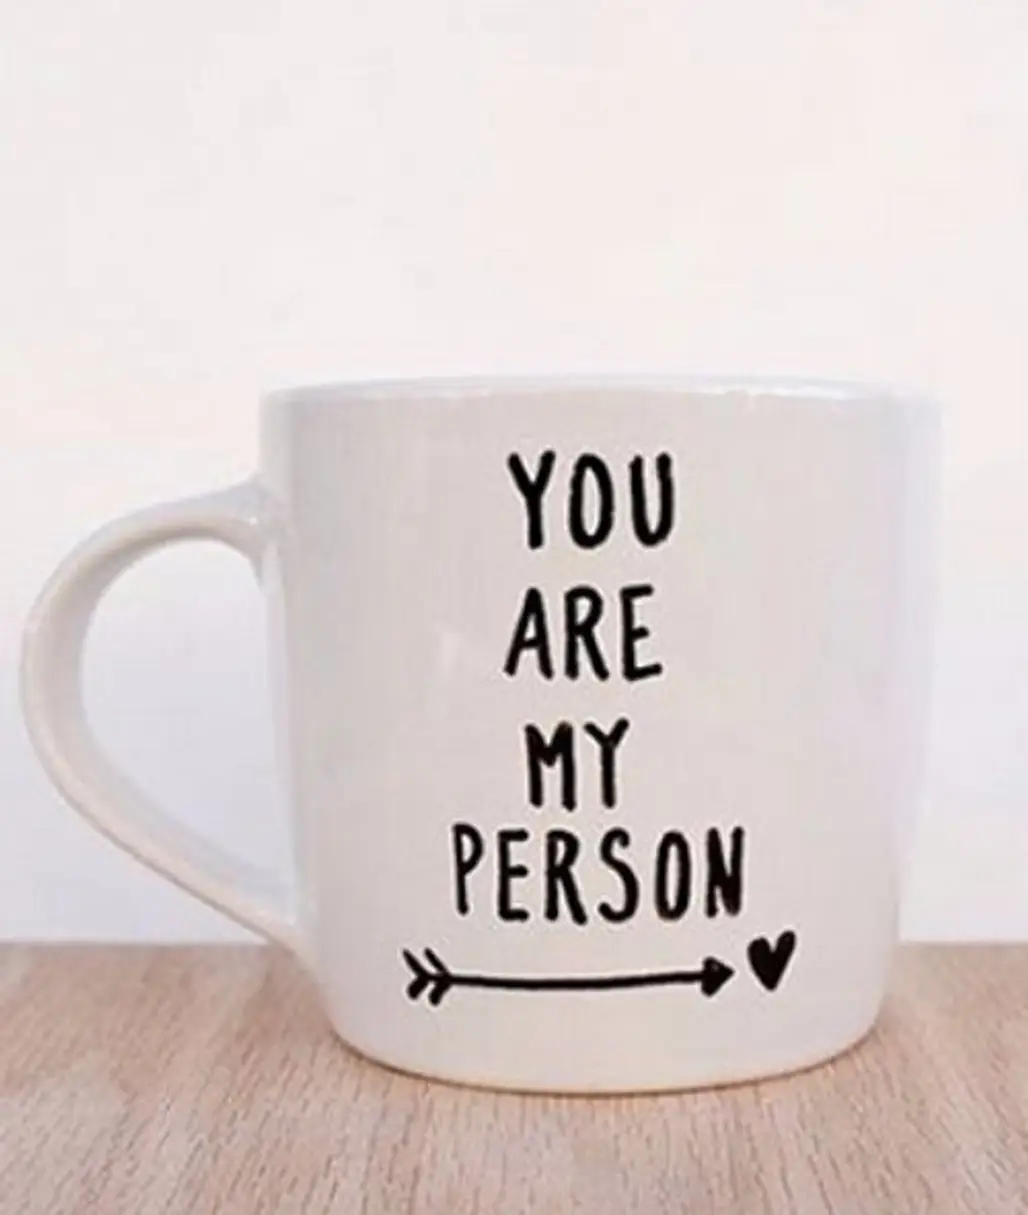 mug,cup,coffee cup,drinkware,tableware,